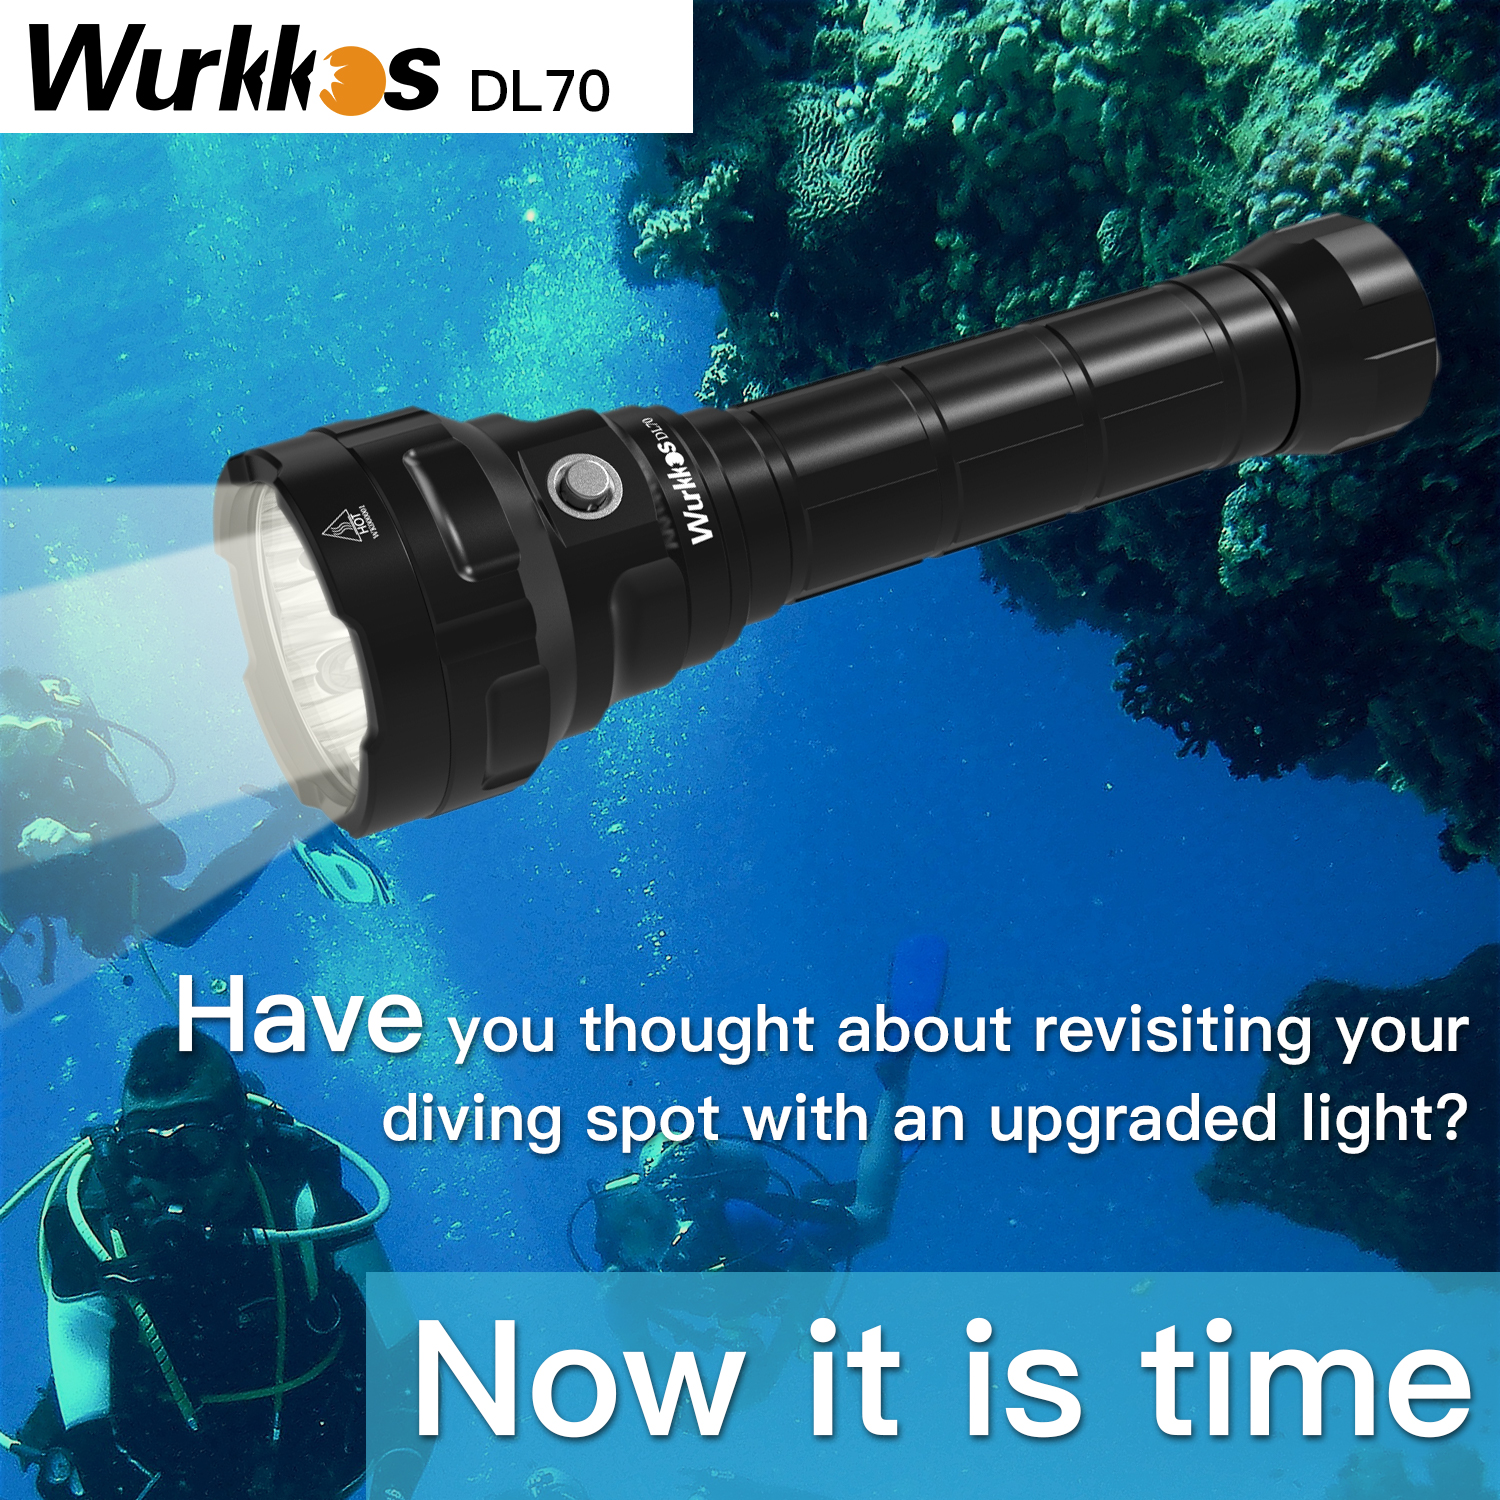 Wurkkos DL70 Super Bright 13000lm Dive Light, Amphibious 